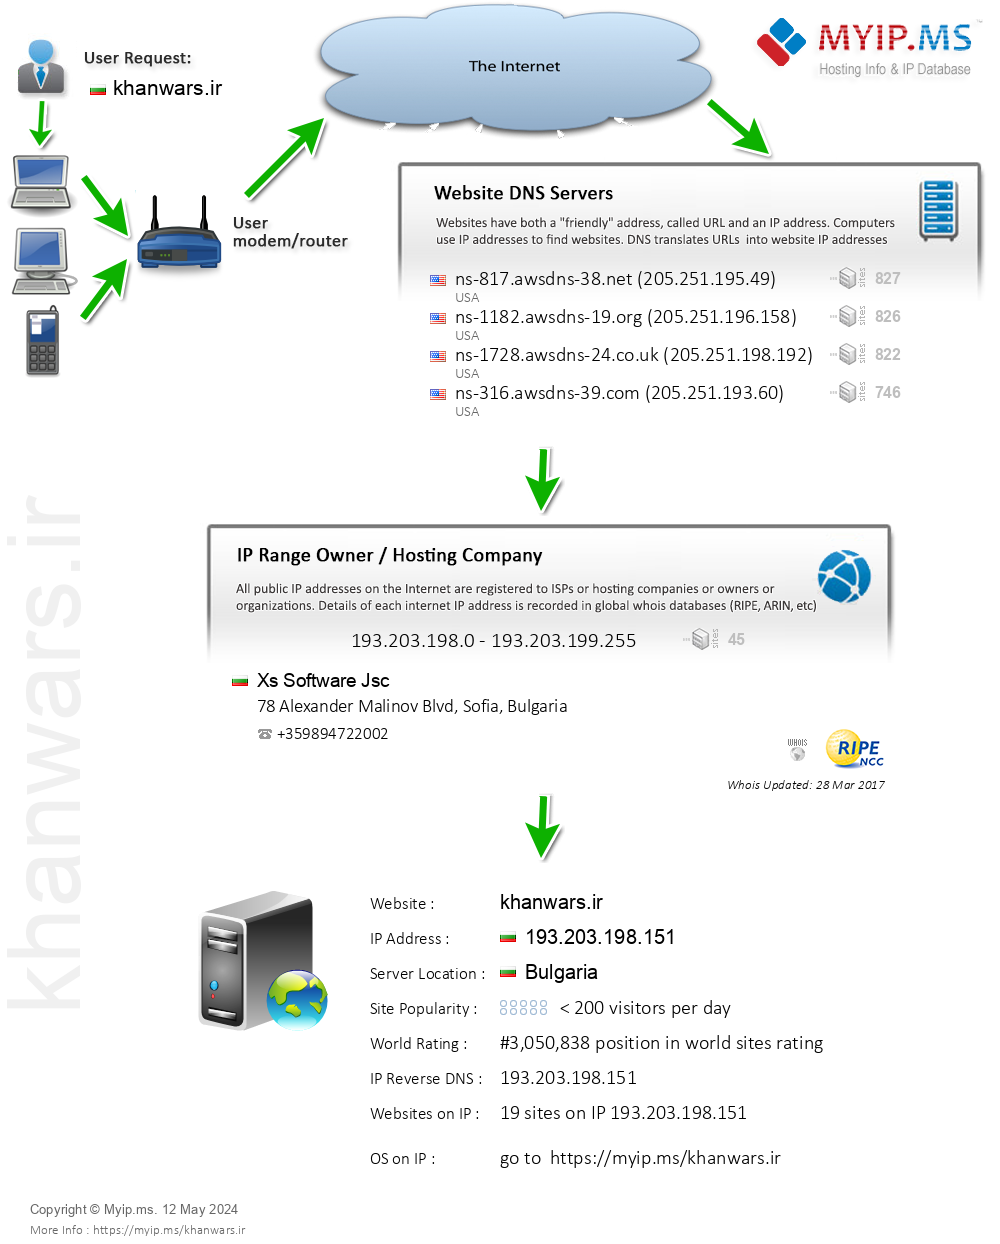 Khanwars.ir - Website Hosting Visual IP Diagram